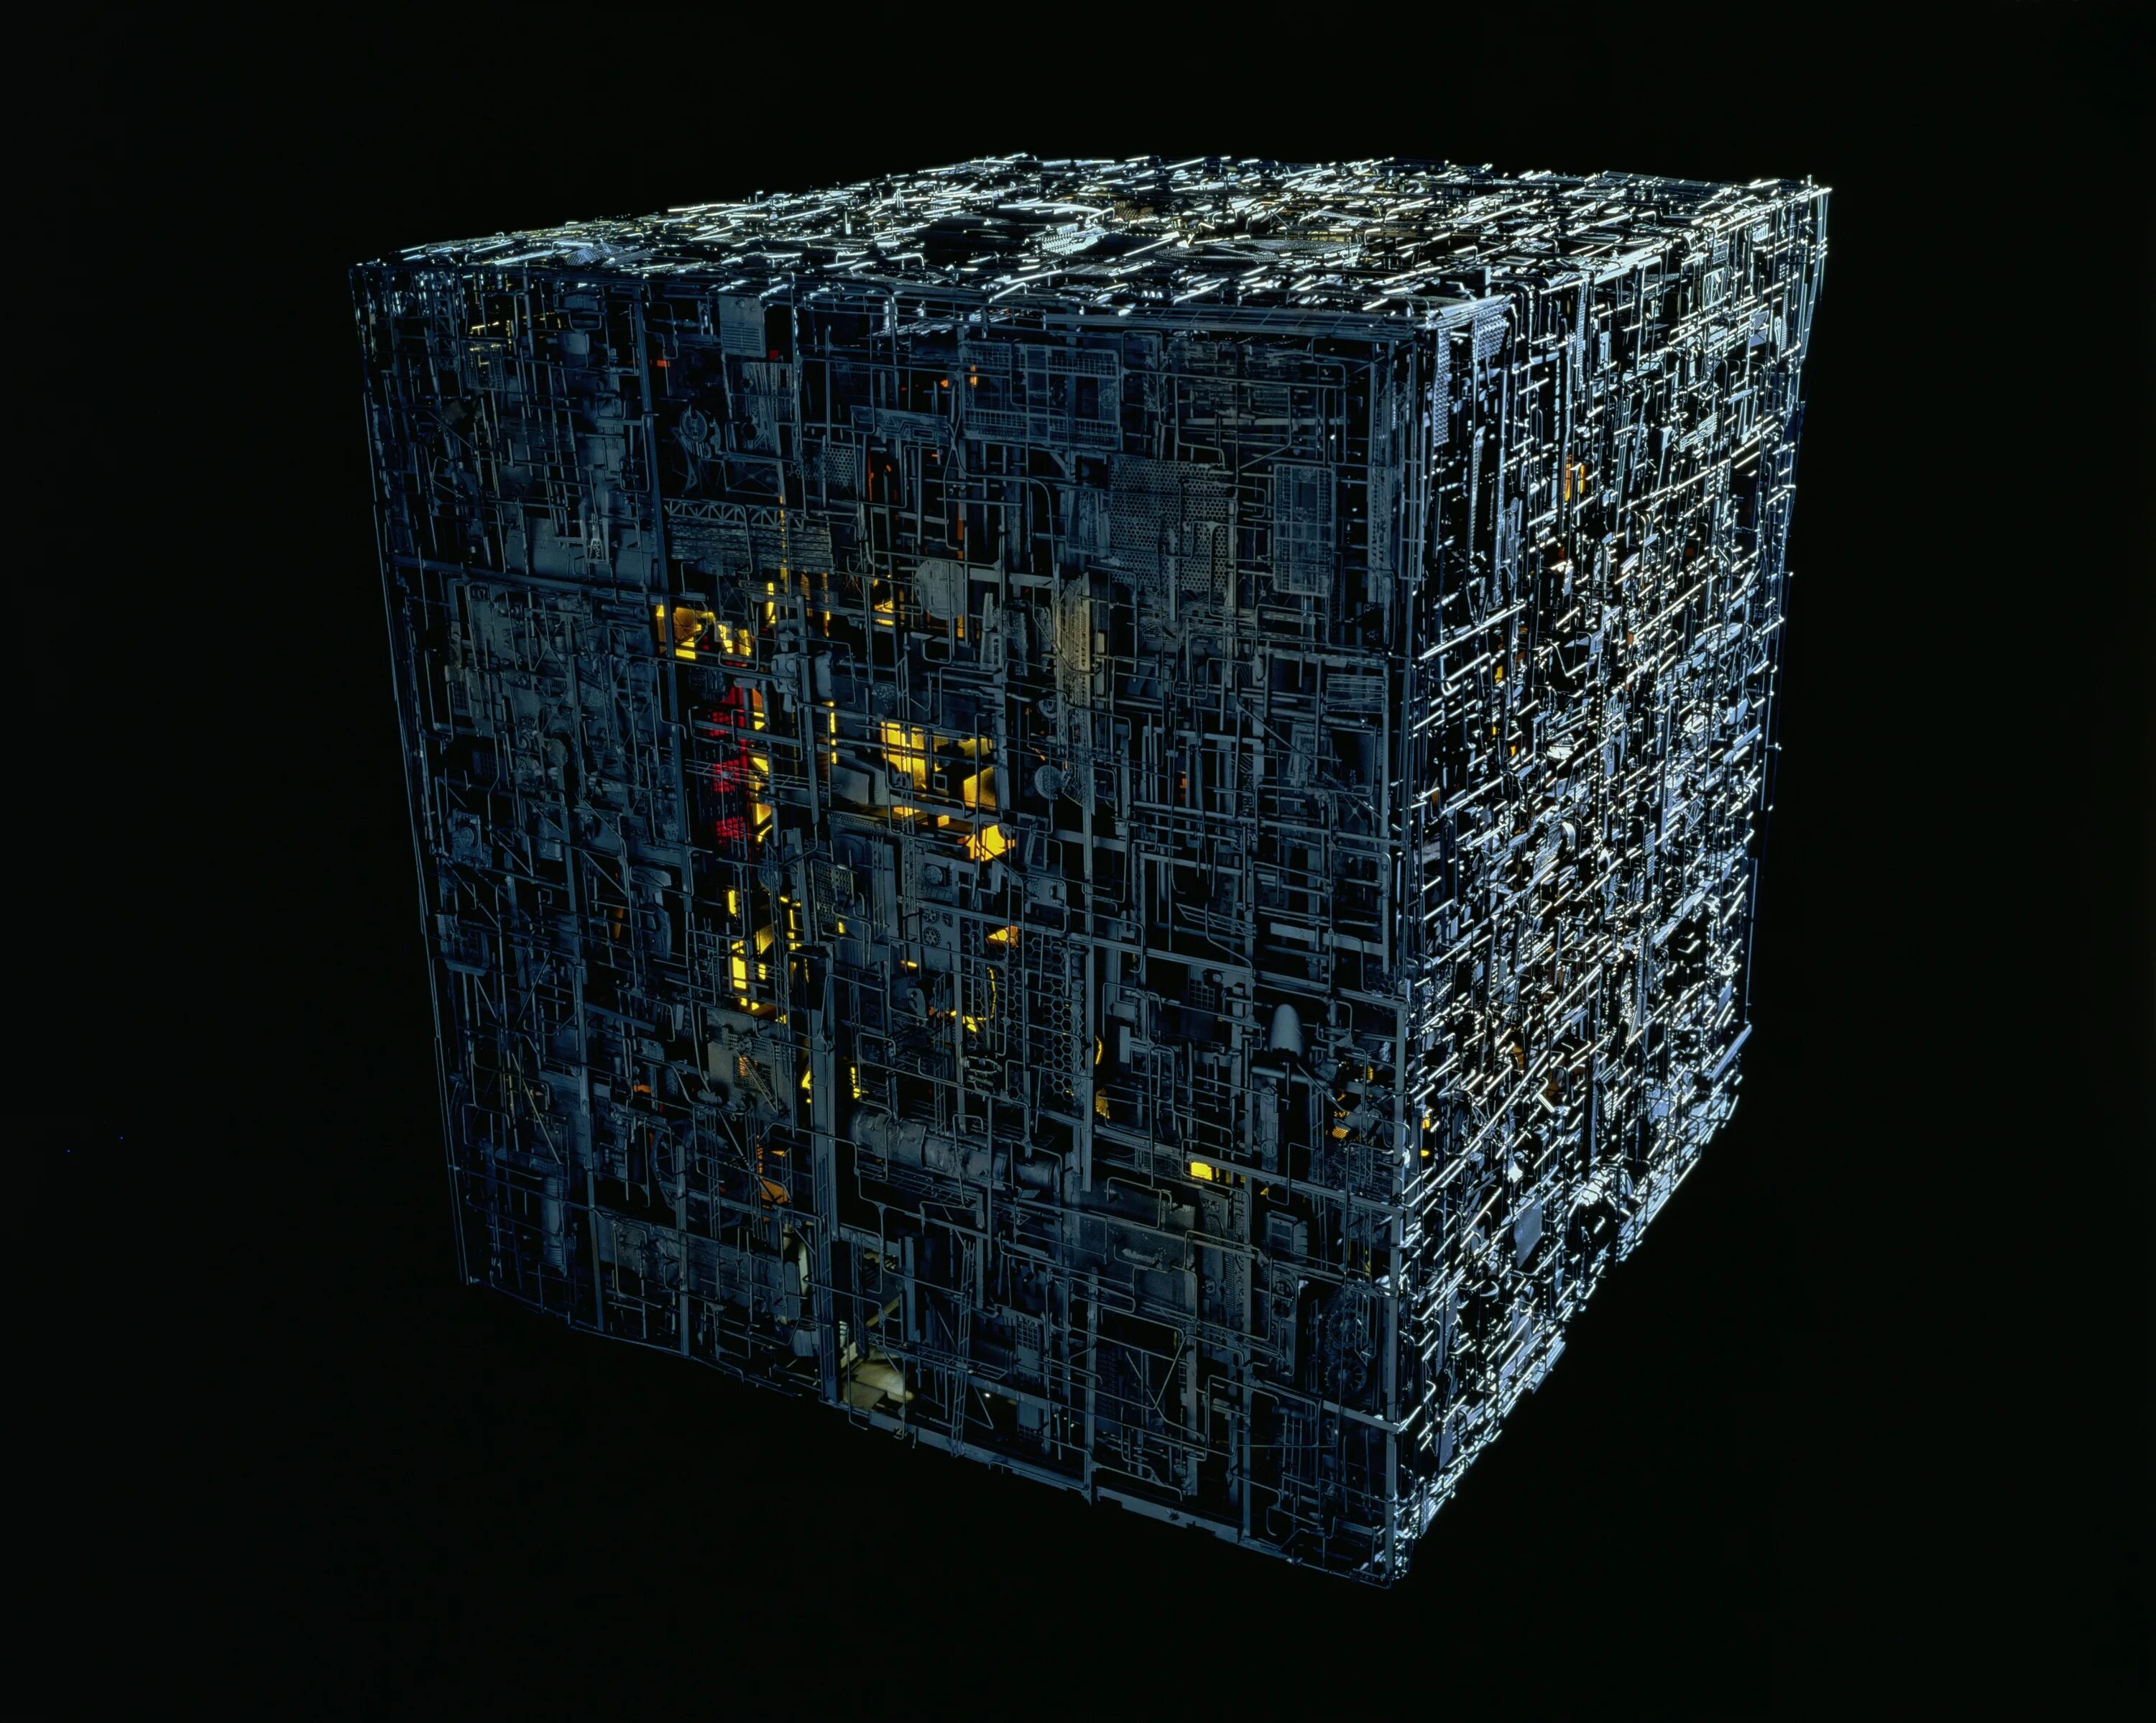 Cubes alpha. Космический корабль куб боргов. Звёздный путь Гиперкуб боргов. Куб борг Стартрек.